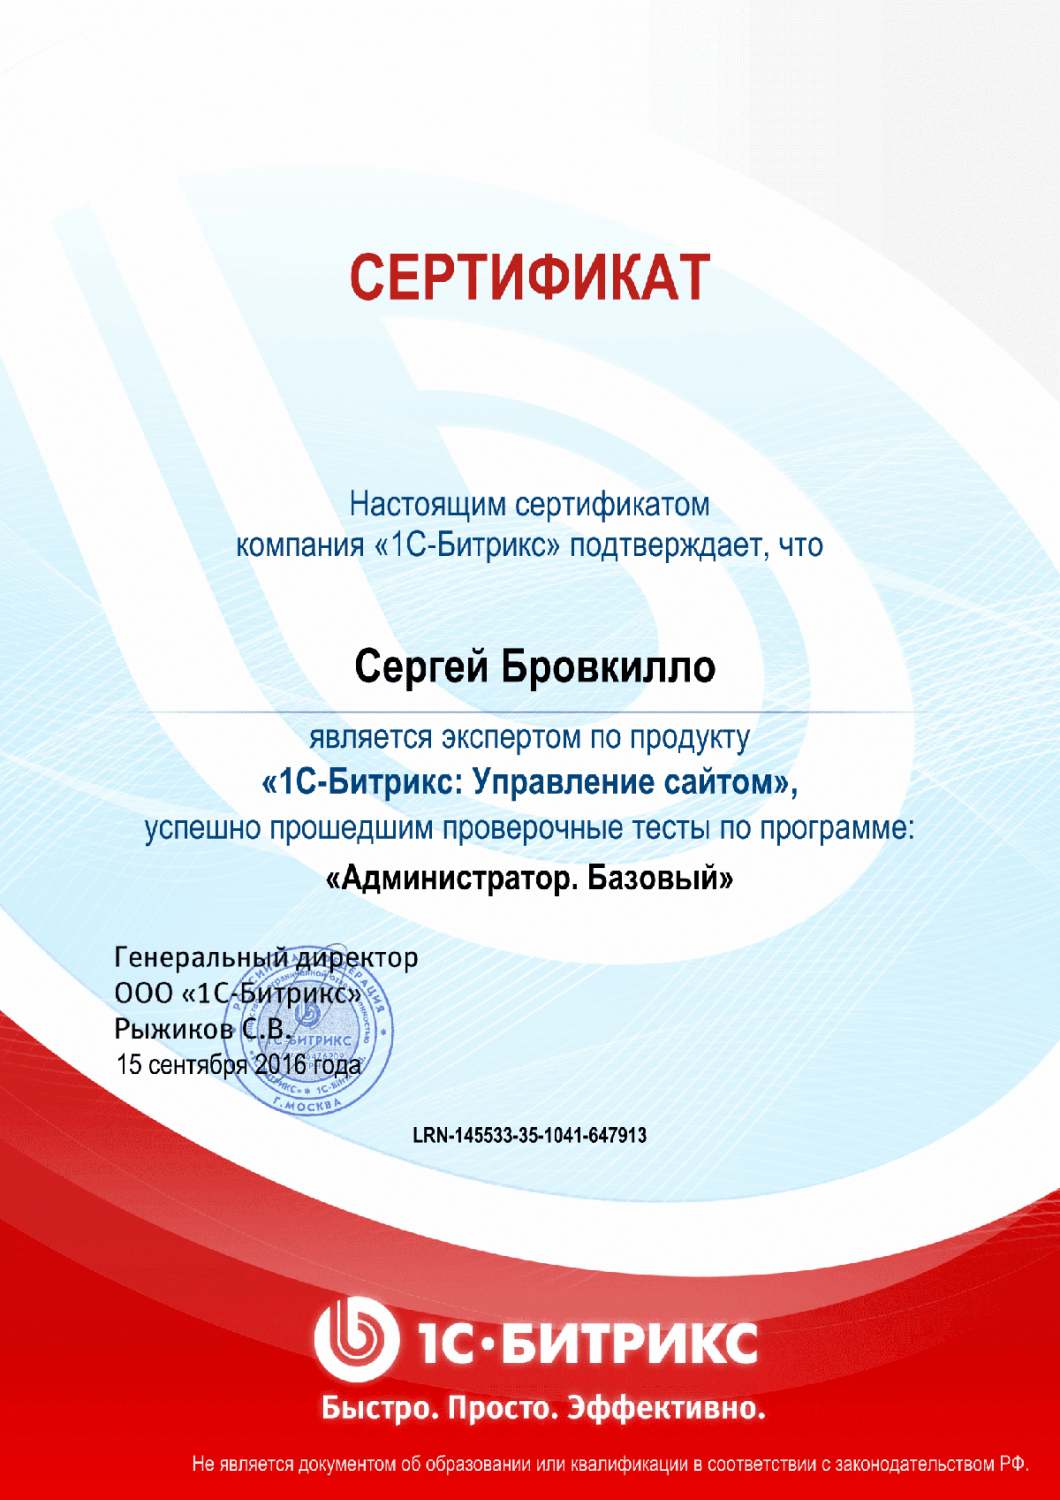 Сертификат эксперта по программе "Администратор. Базовый" в Грозного